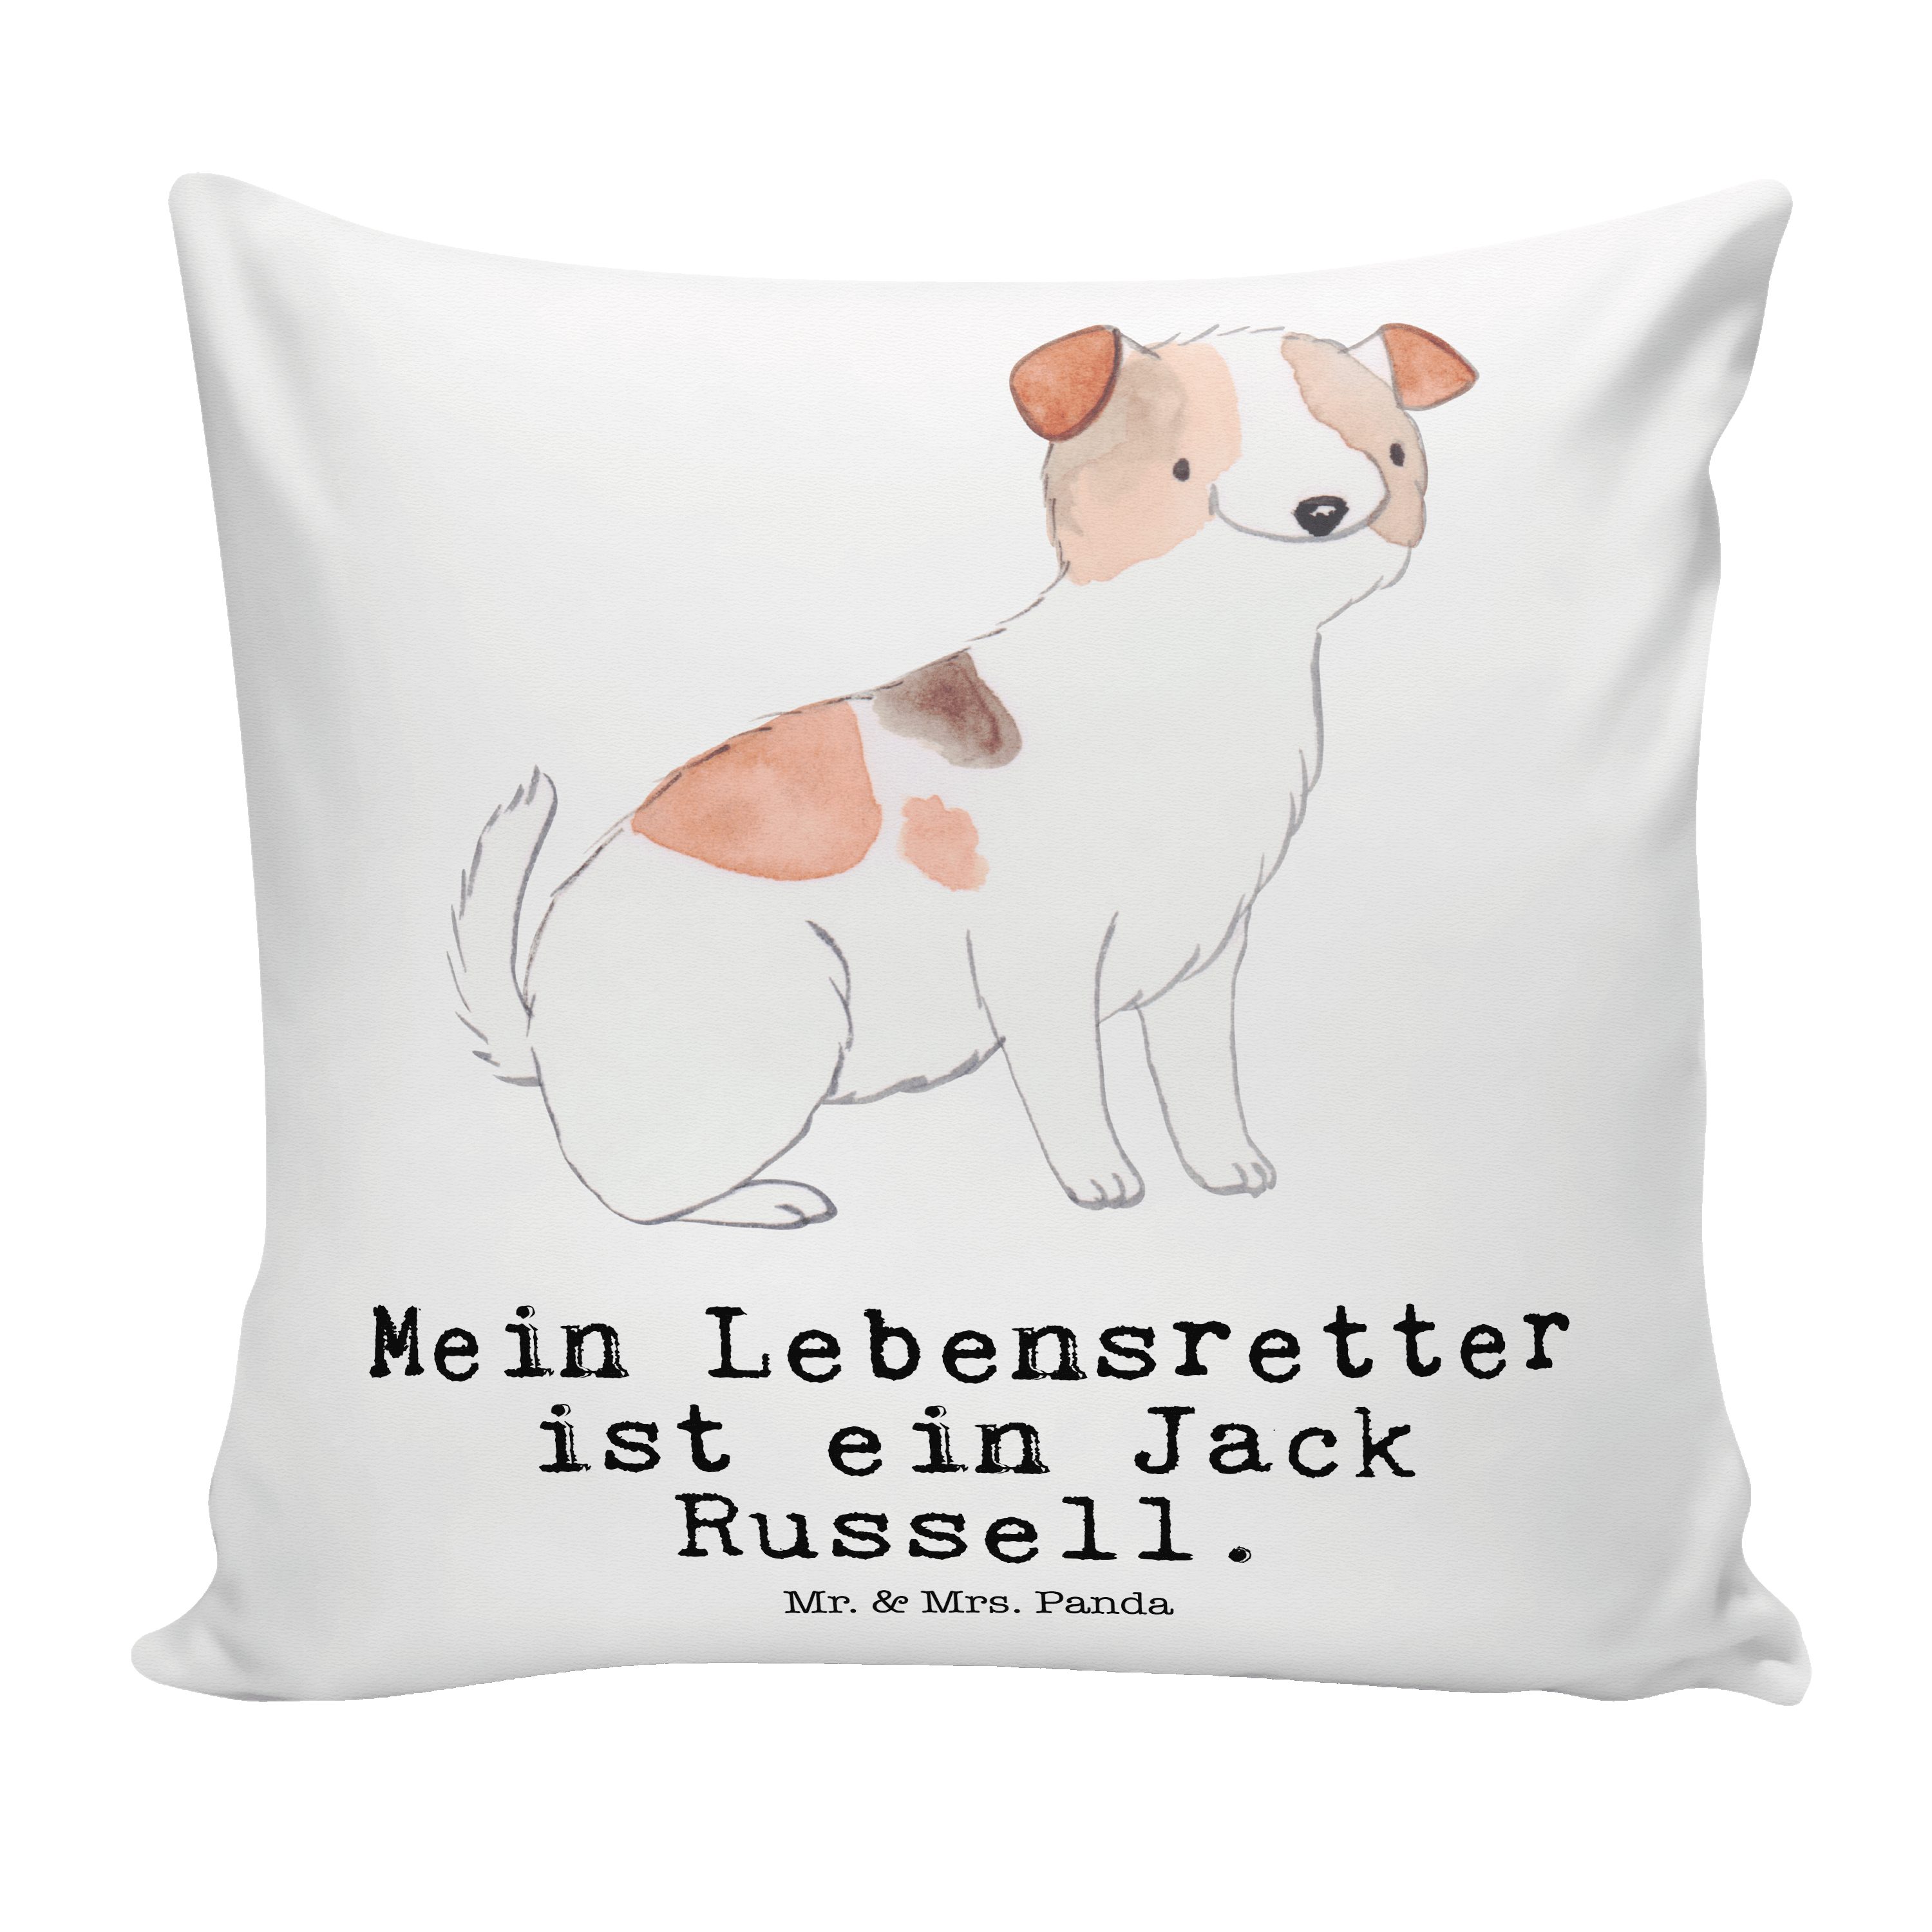 Mr. & Mrs. Panda Dekokissen Jack Russel Terrier Lebensretter - Weiß - Geschenk, Welpe, Dekokissen